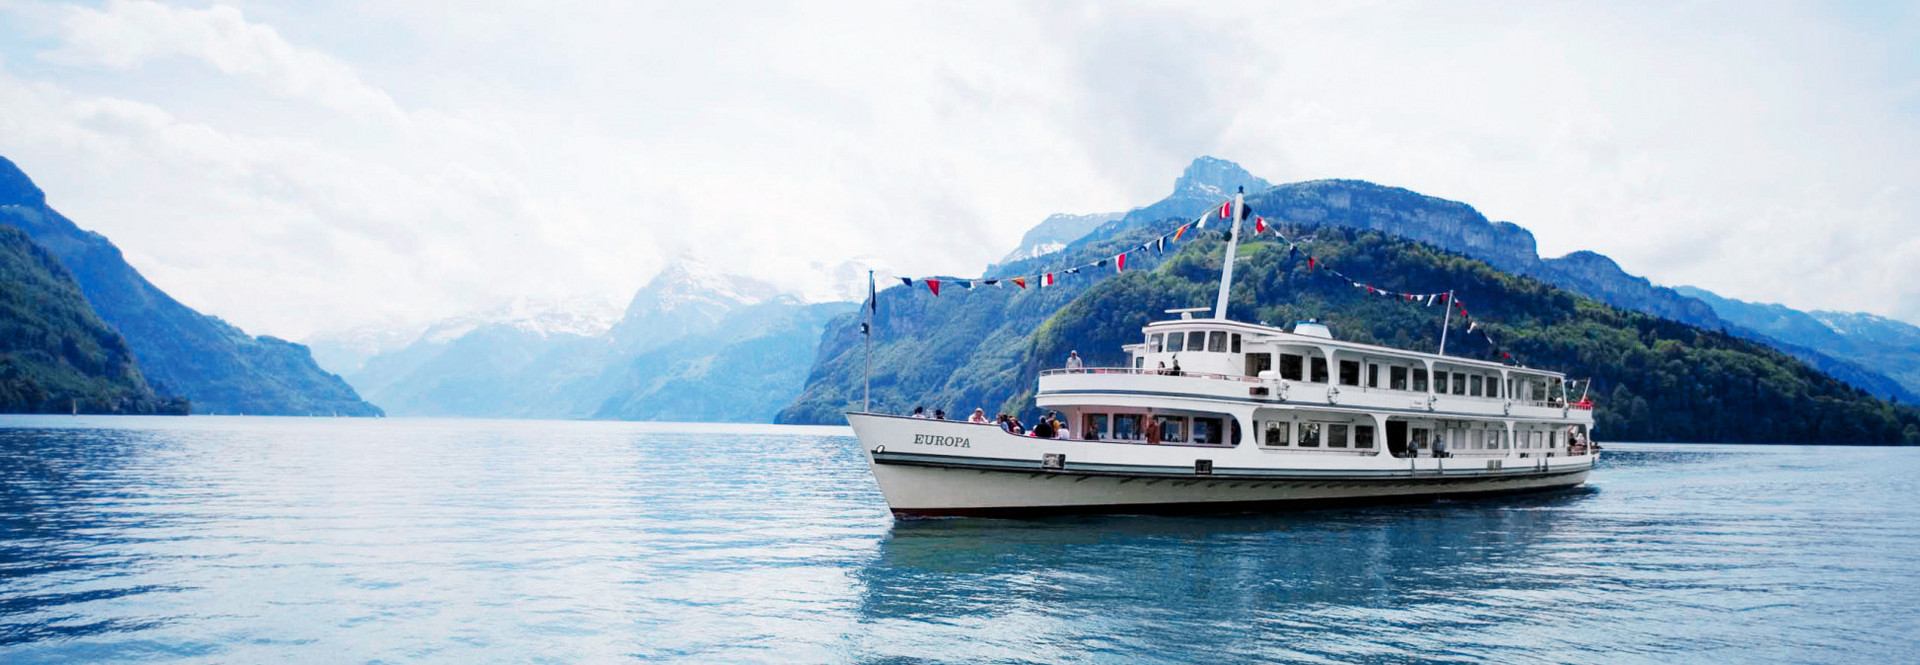 Le bateau à moteur Europa avec des drapeaux fixes lors d'un voyage sur le lac des Quatre-Cantons.